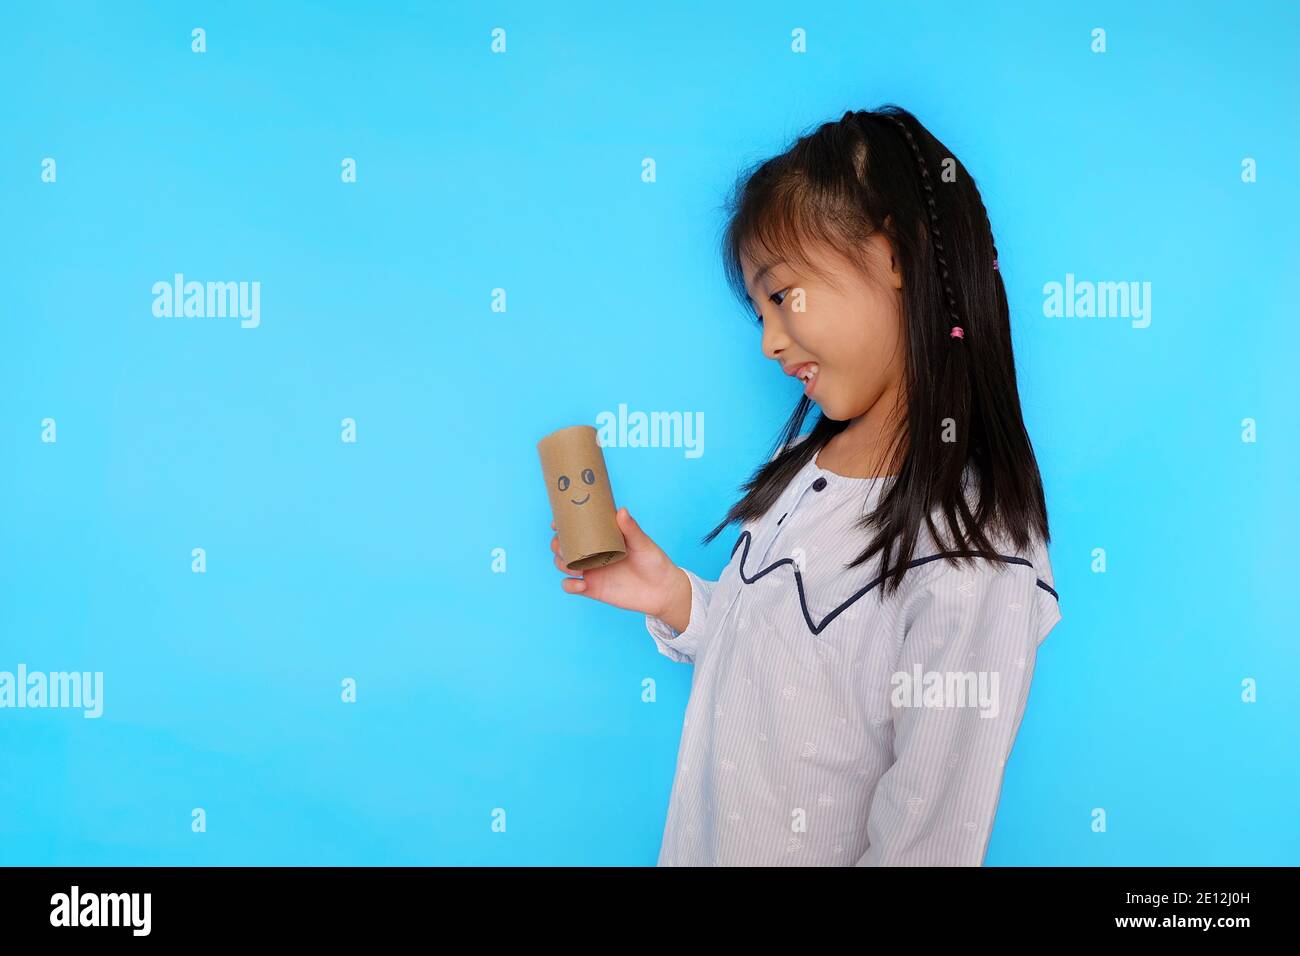 Une jeune fille asiatique mignonne jouant avec un rouleau de tissu vide, dessinant un visage dessus. Fond bleu clair Uni. Banque D'Images